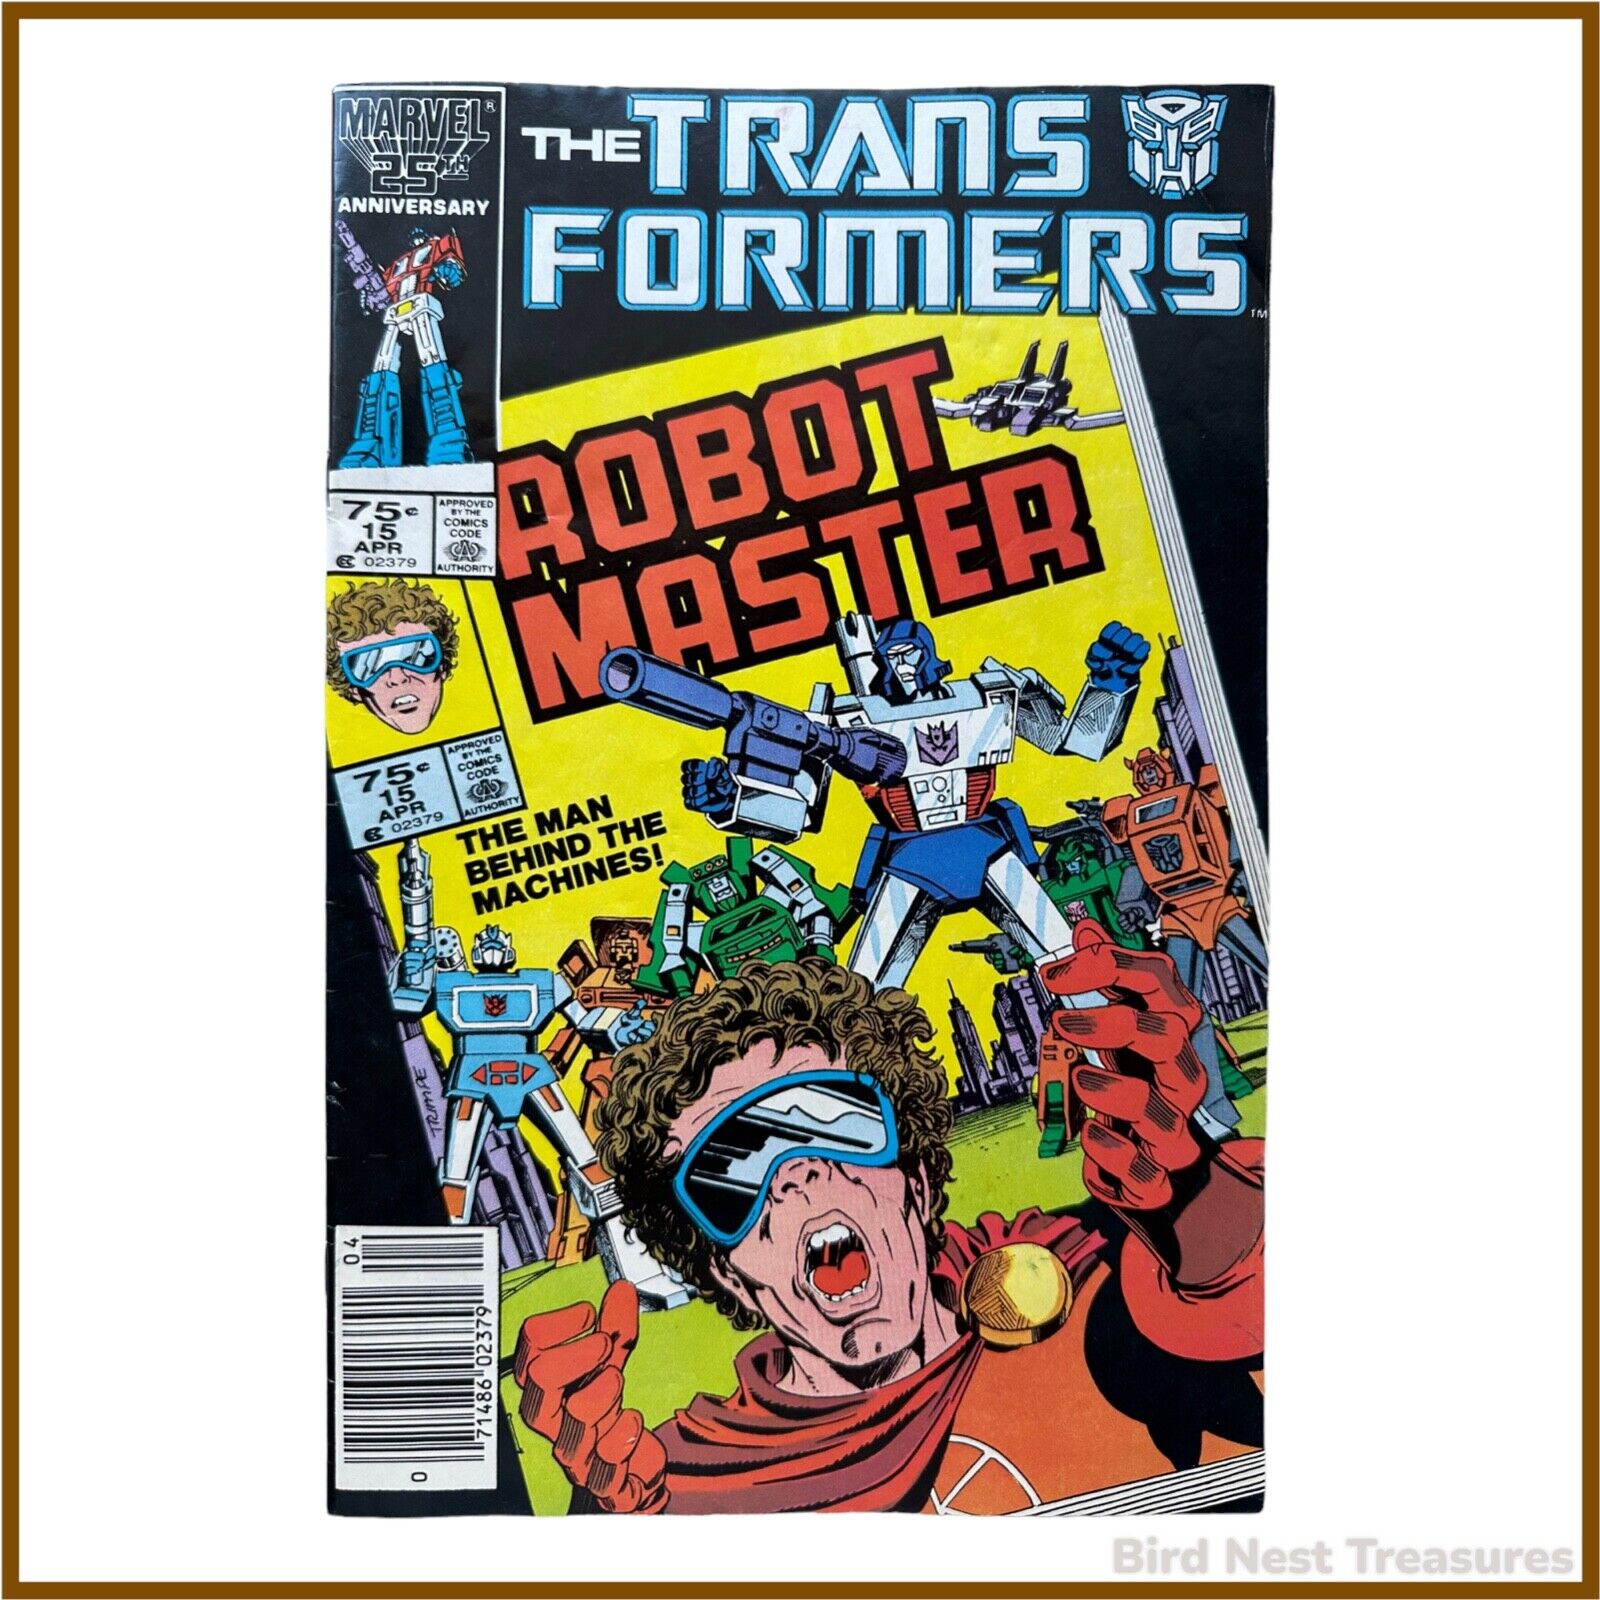 Marvel Comics THE TRANSFORMERS Vol. 1 No. 15 April 1986 ROBOT MASTER - Very Fine